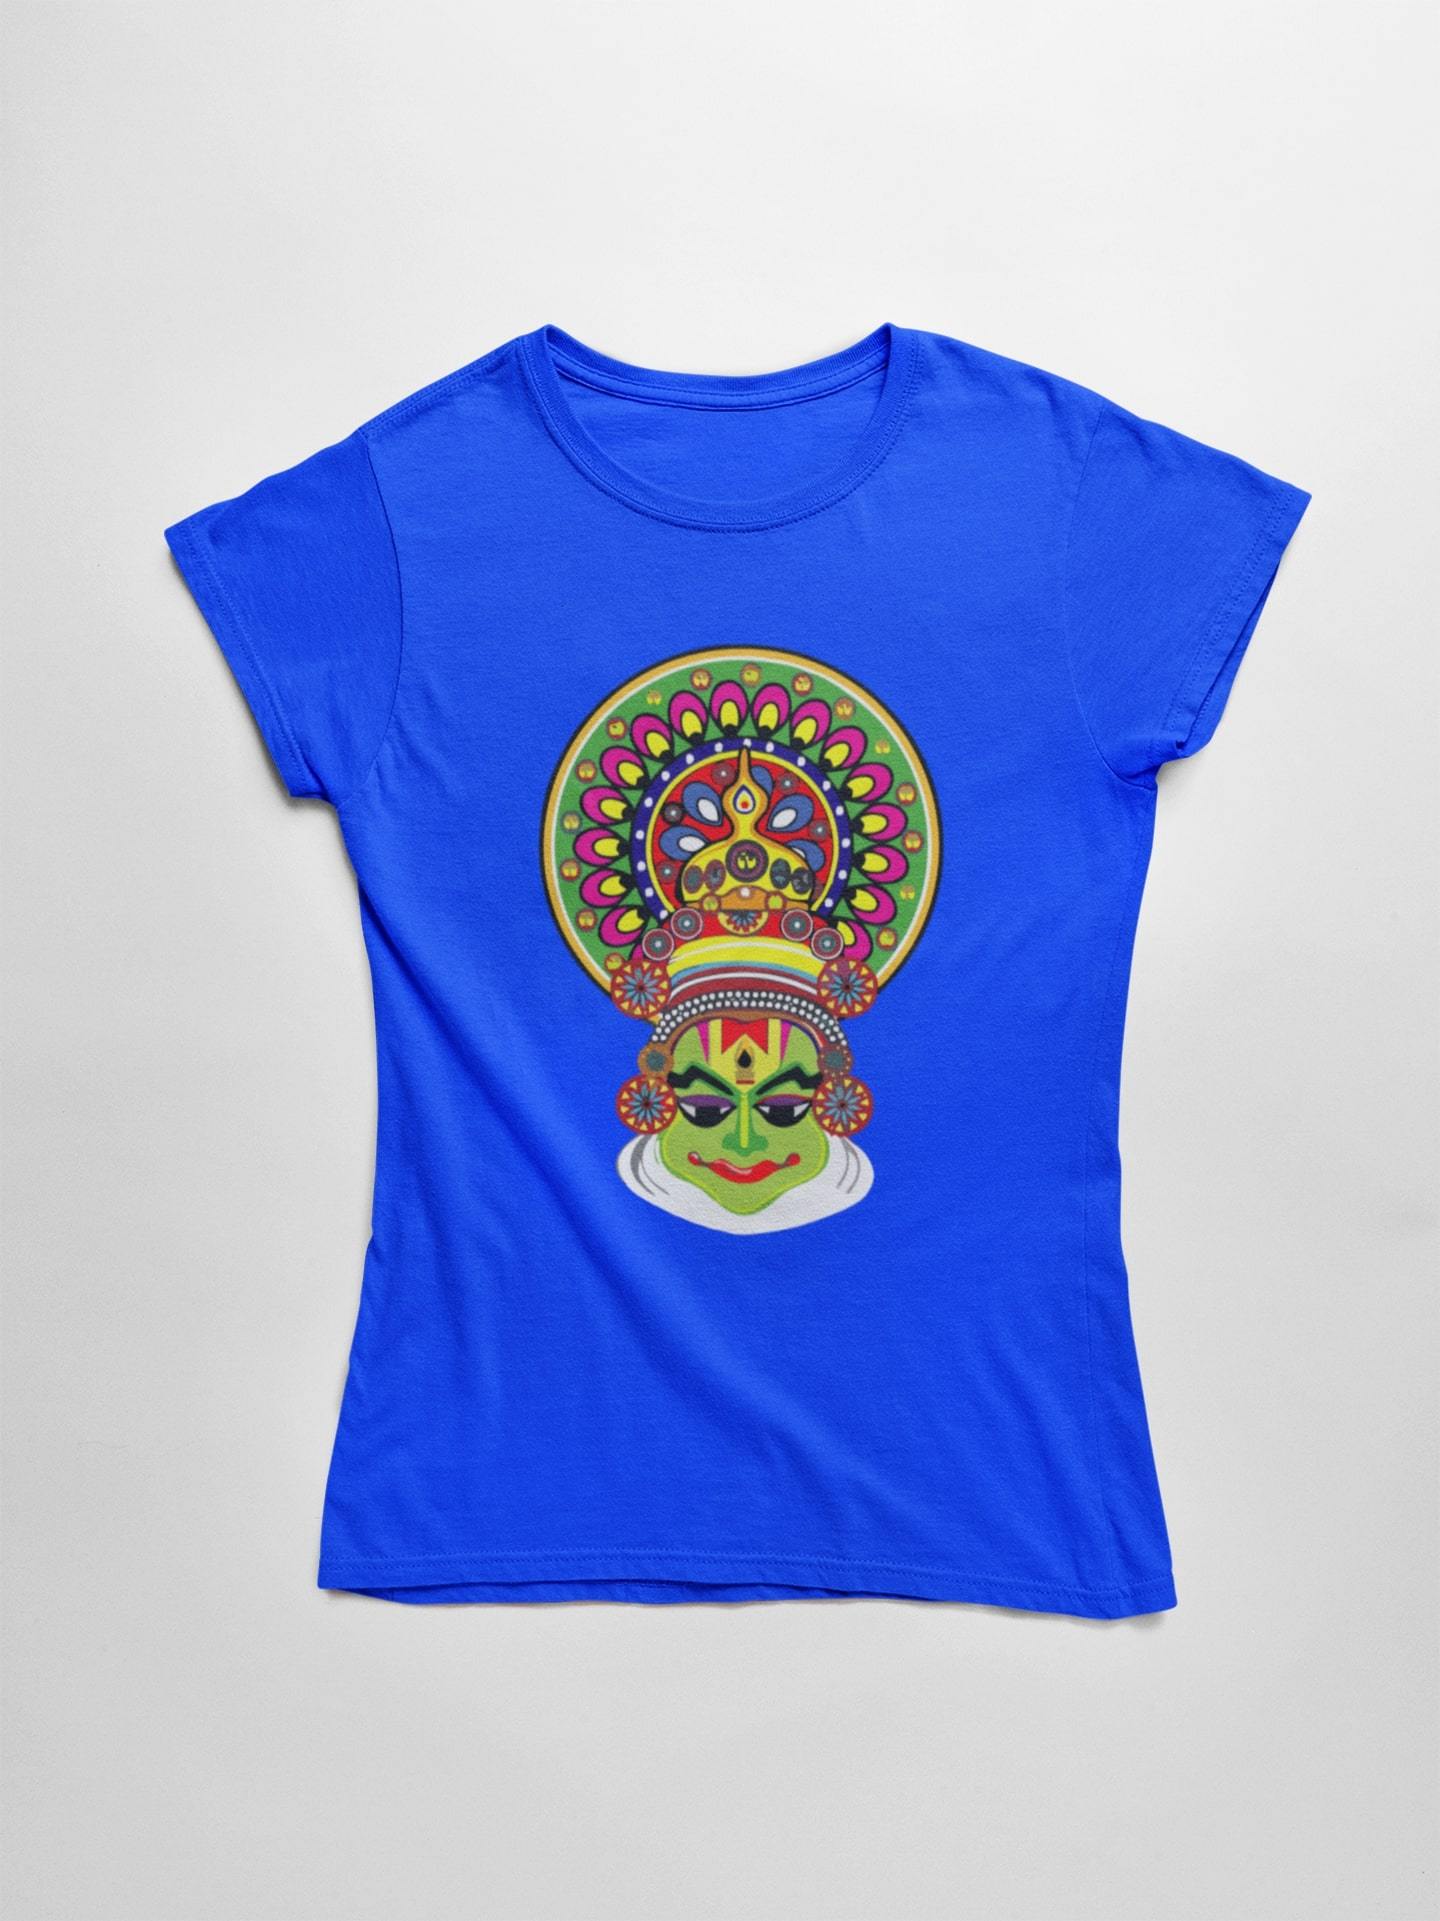 thelegalgang,Kathakali Inspired Kerela Dance T shirt for Women,WOMEN.